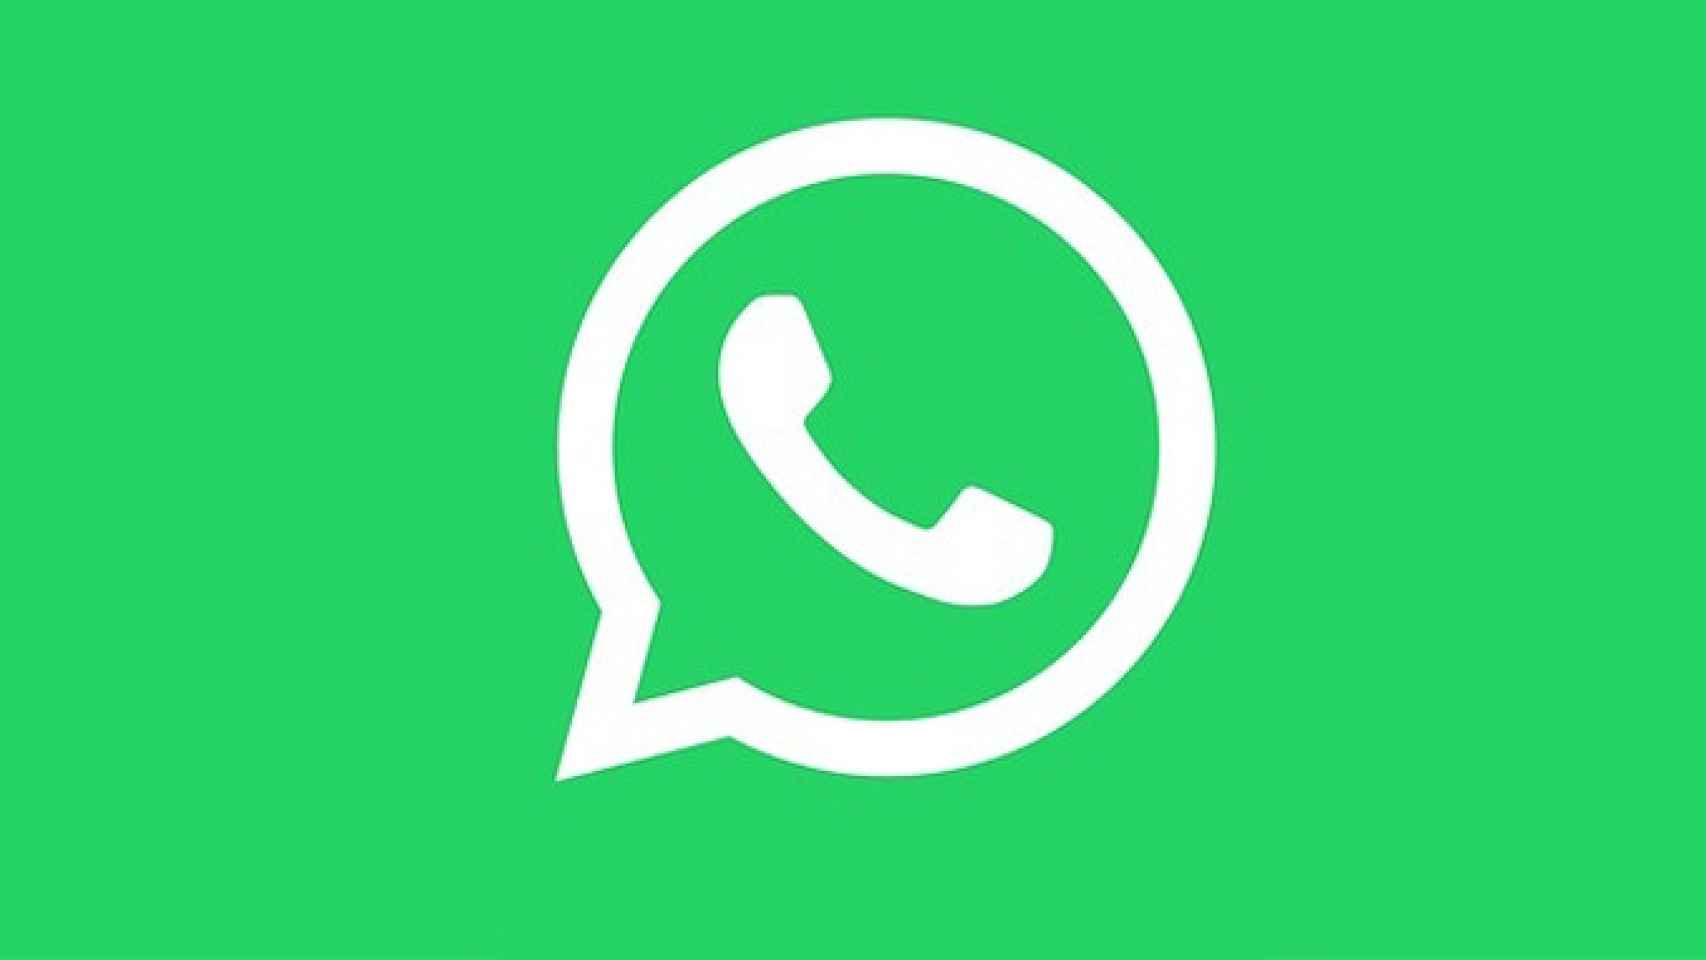 Whatsapp en sus colores corporativos / CG